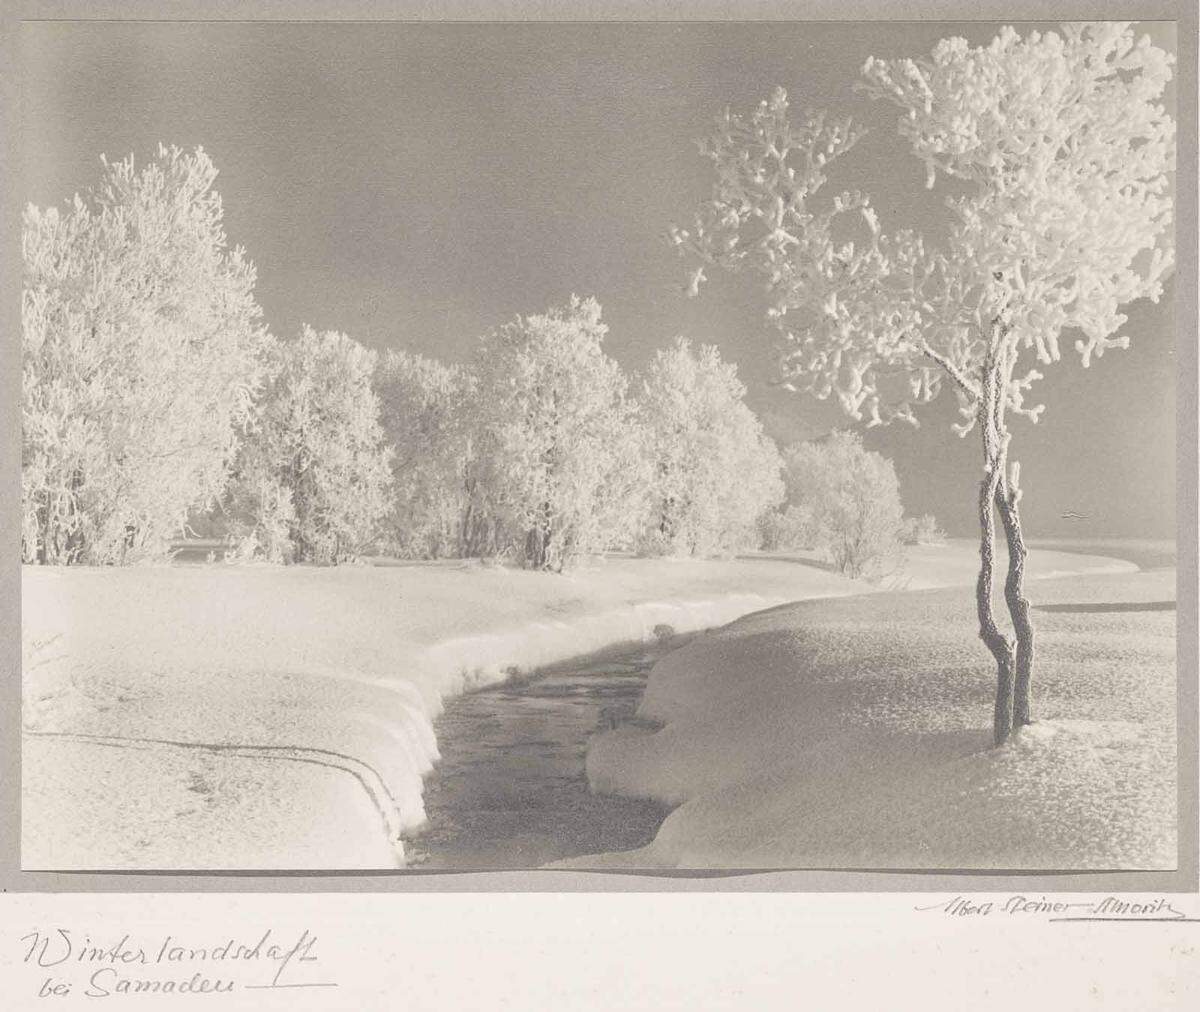 Steiners Landschaftsaufnahmen aus dem Engadin zählen zu den meistreproduzierten Fotos ihrer Zeit. Hier: Albert Steiner, Winterlandschaft bei Samedan